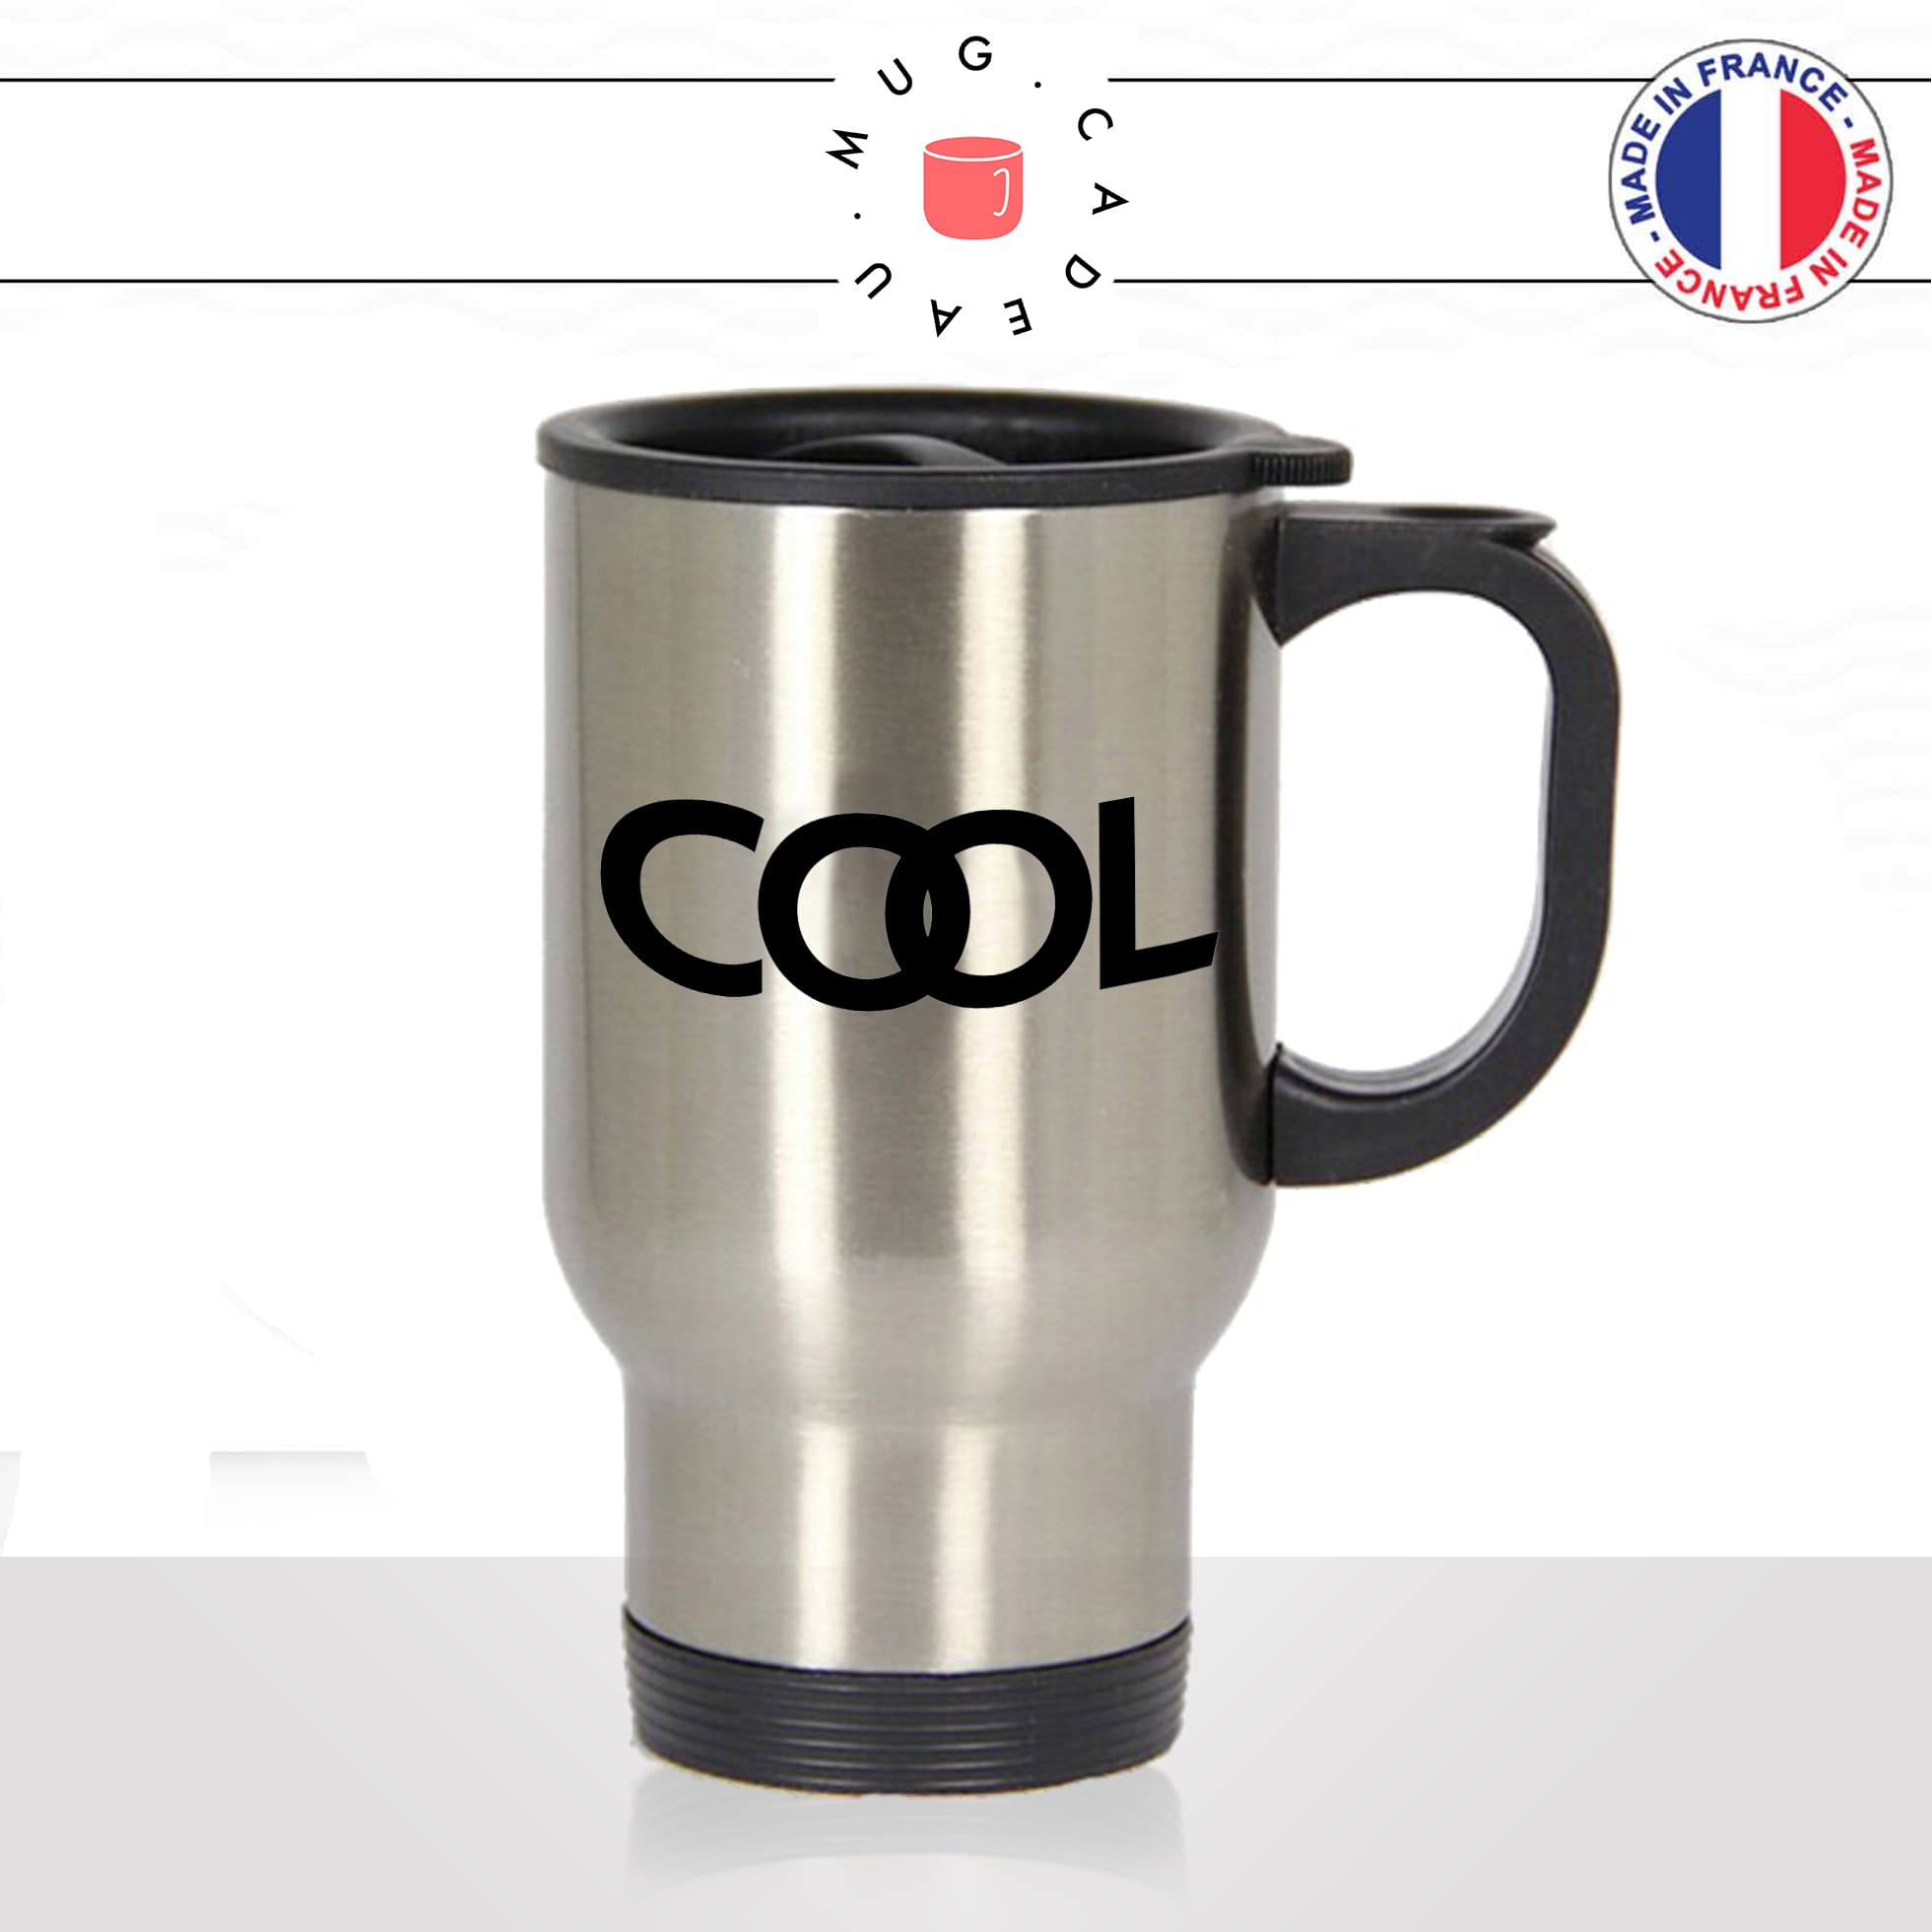 mug-tasse-thermos-isotherme-voyage-cool-mot-anglais-expression-jeune-homme-mec-ado-humour-fun-idée-cadeau-originale-coole-unique2